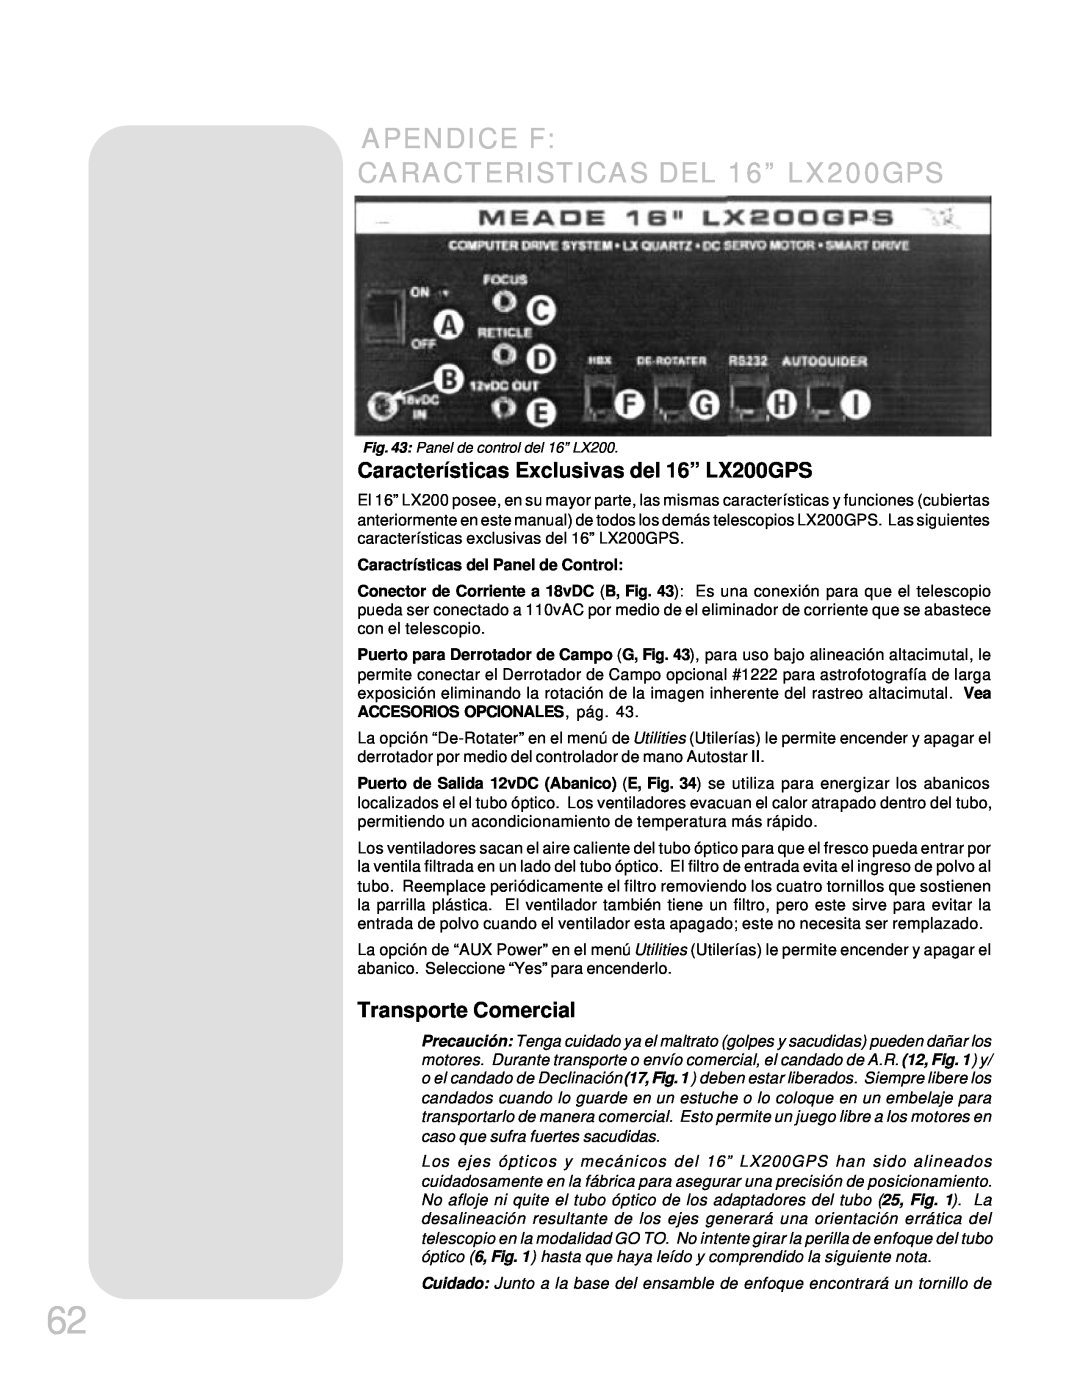 Meade APENDICE F CARACTERISTICAS DEL 16” LX200GPS, Características Exclusivas del 16” LX200GPS, Transporte Comercial 